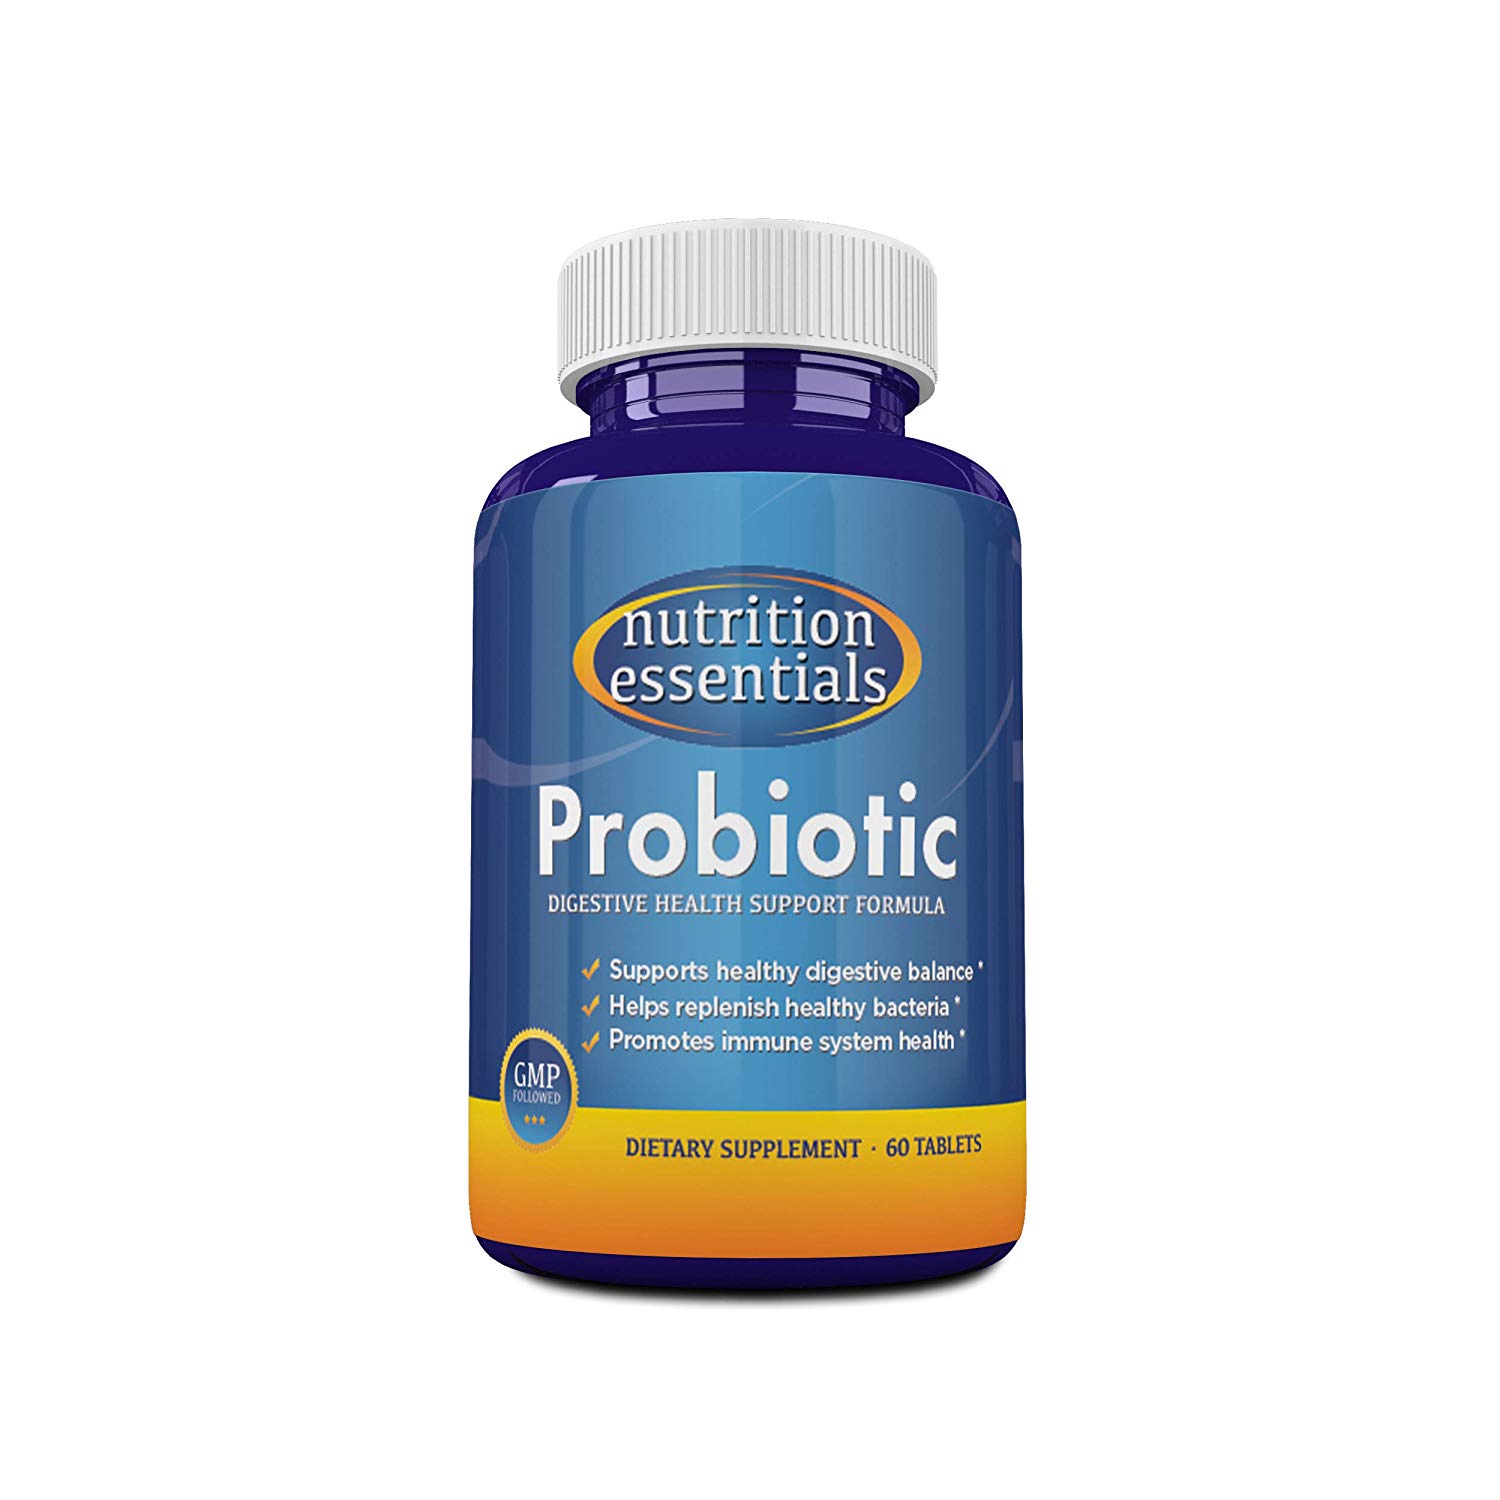 Top 10 best probiotic brands